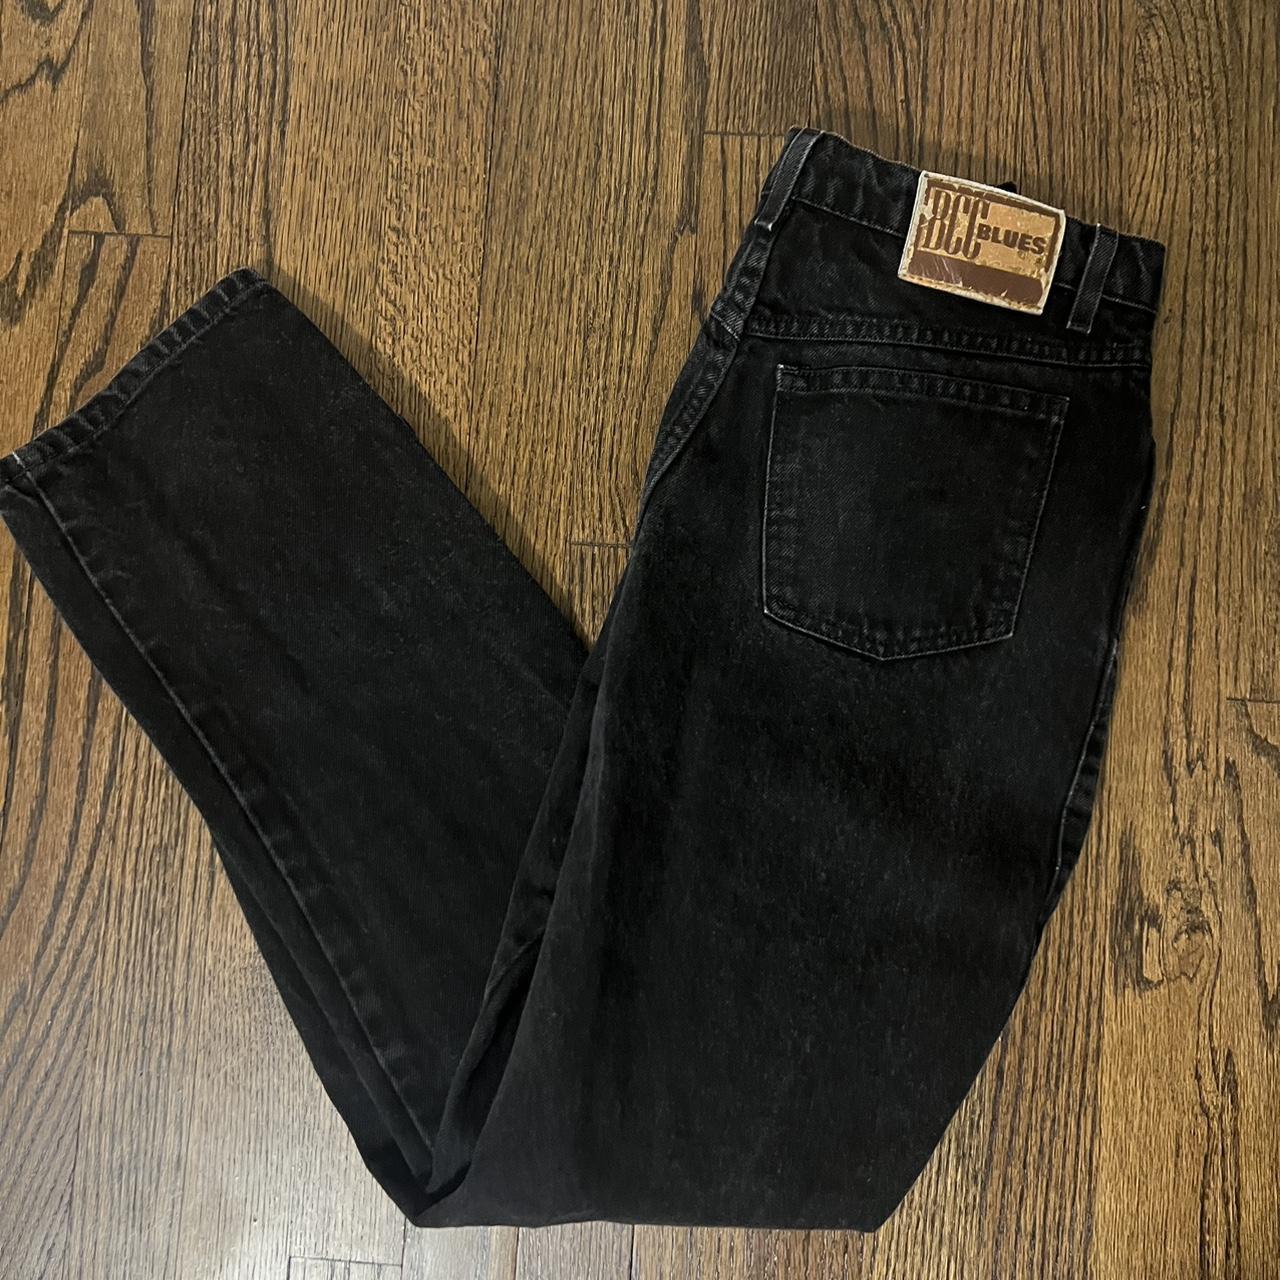 30x30 BCC Blues black jeans - Depop